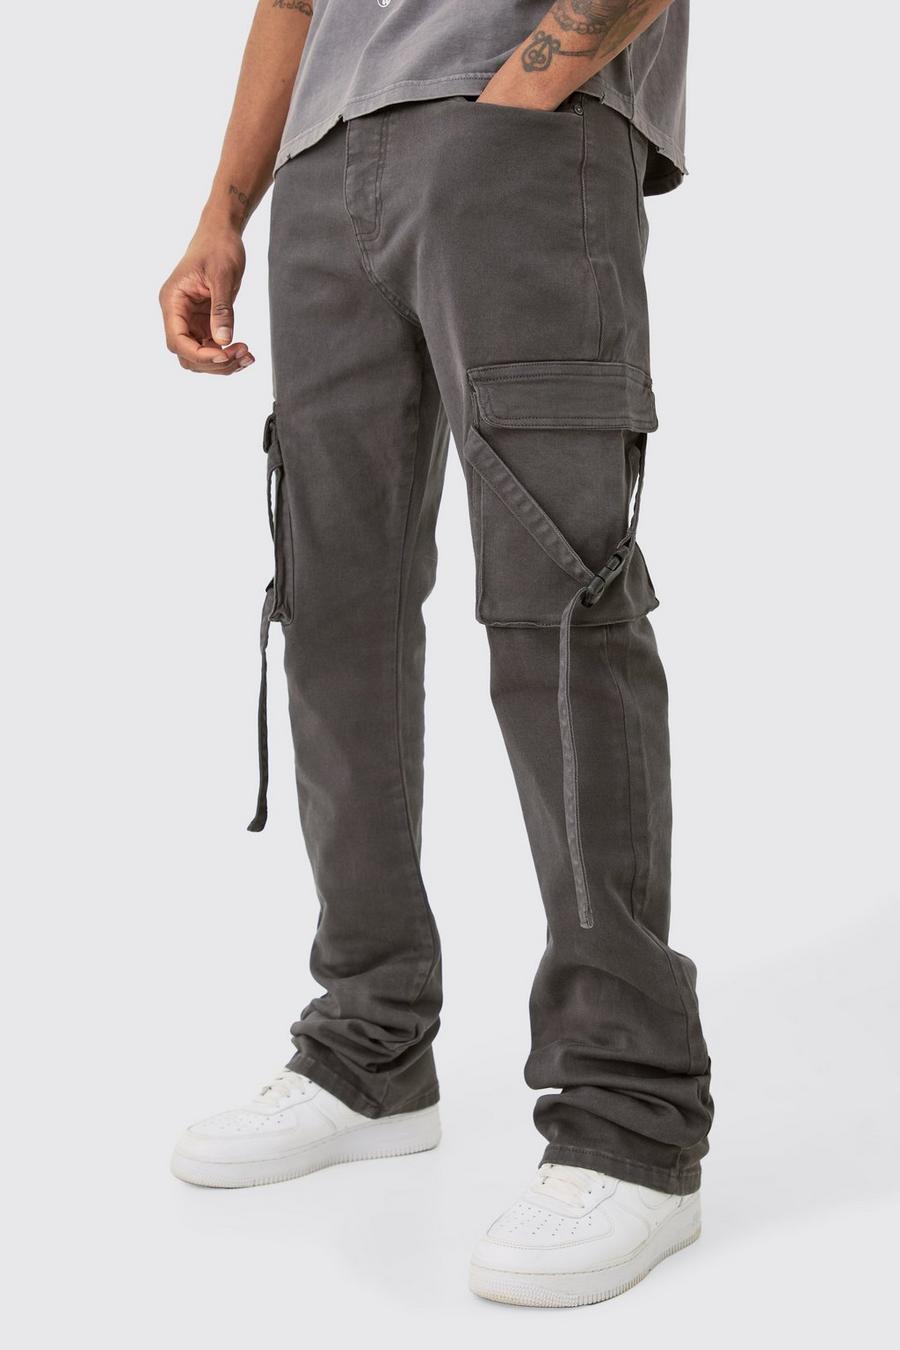 Pantaloni Cargo Tall Slim Fit con vita fissa, pieghe sul fondo e spalline svasate, Charcoal